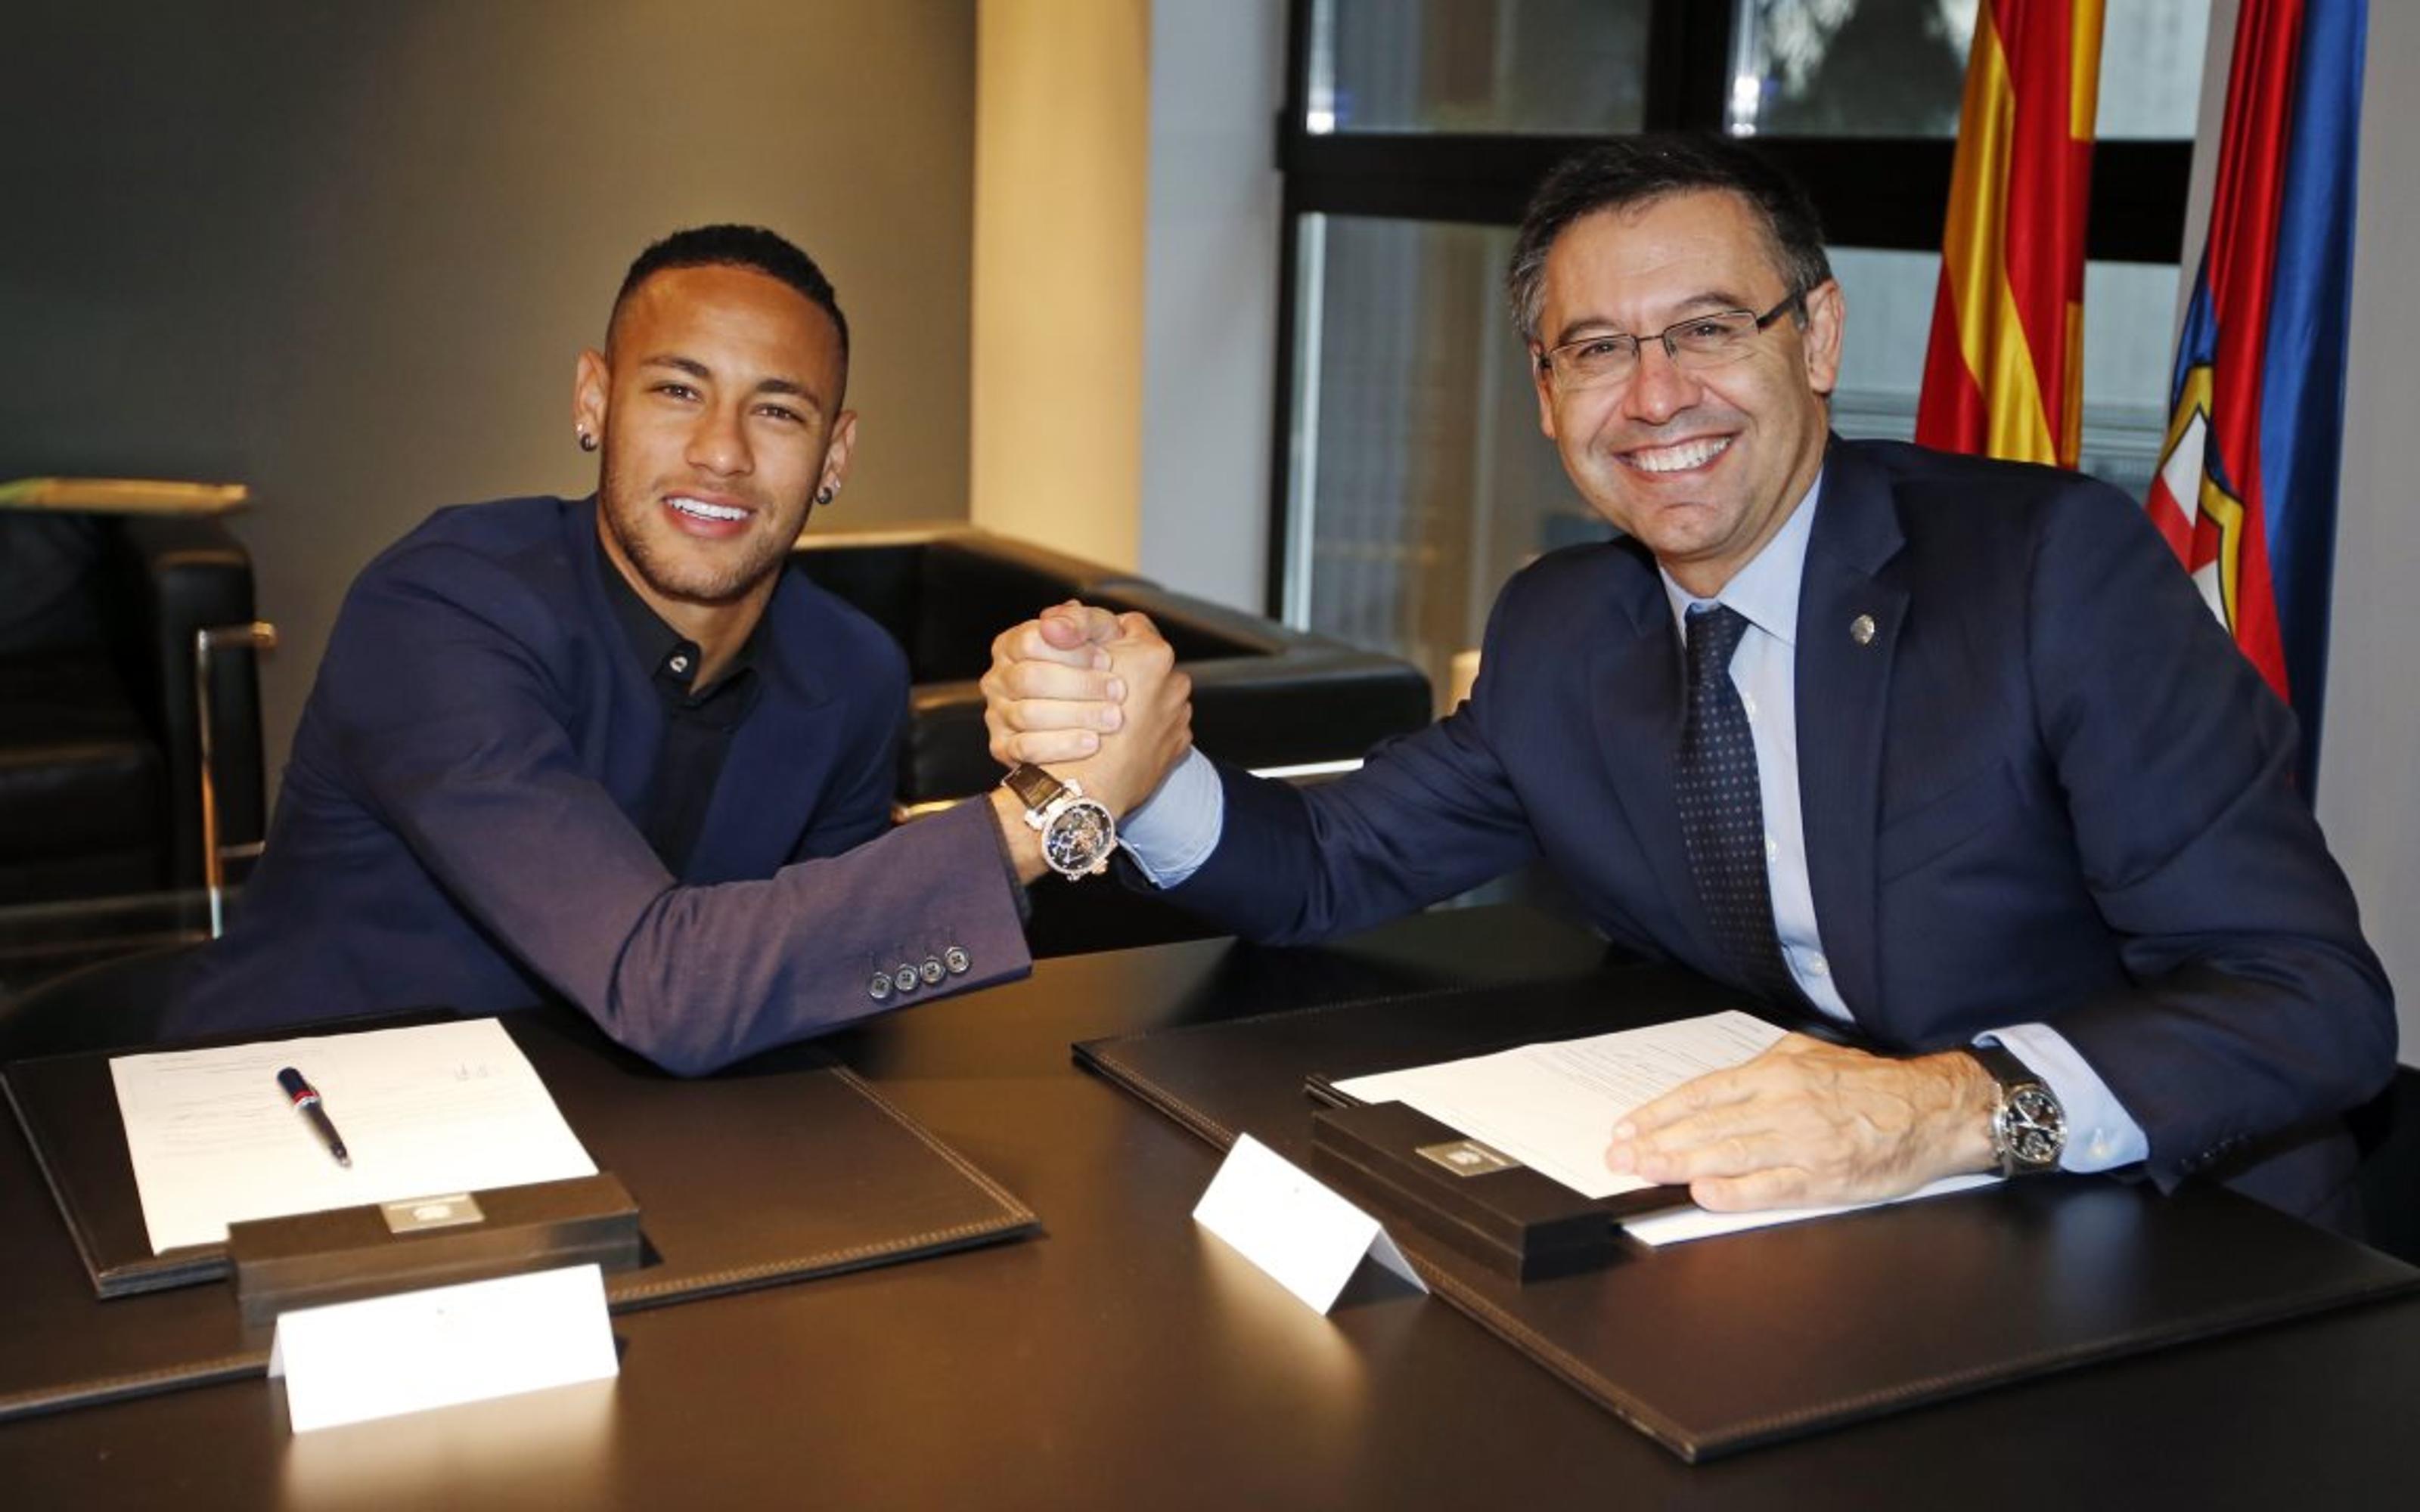 El Barça guanya la batalla judicial a Neymar pel bonus de 43 milions d'euros